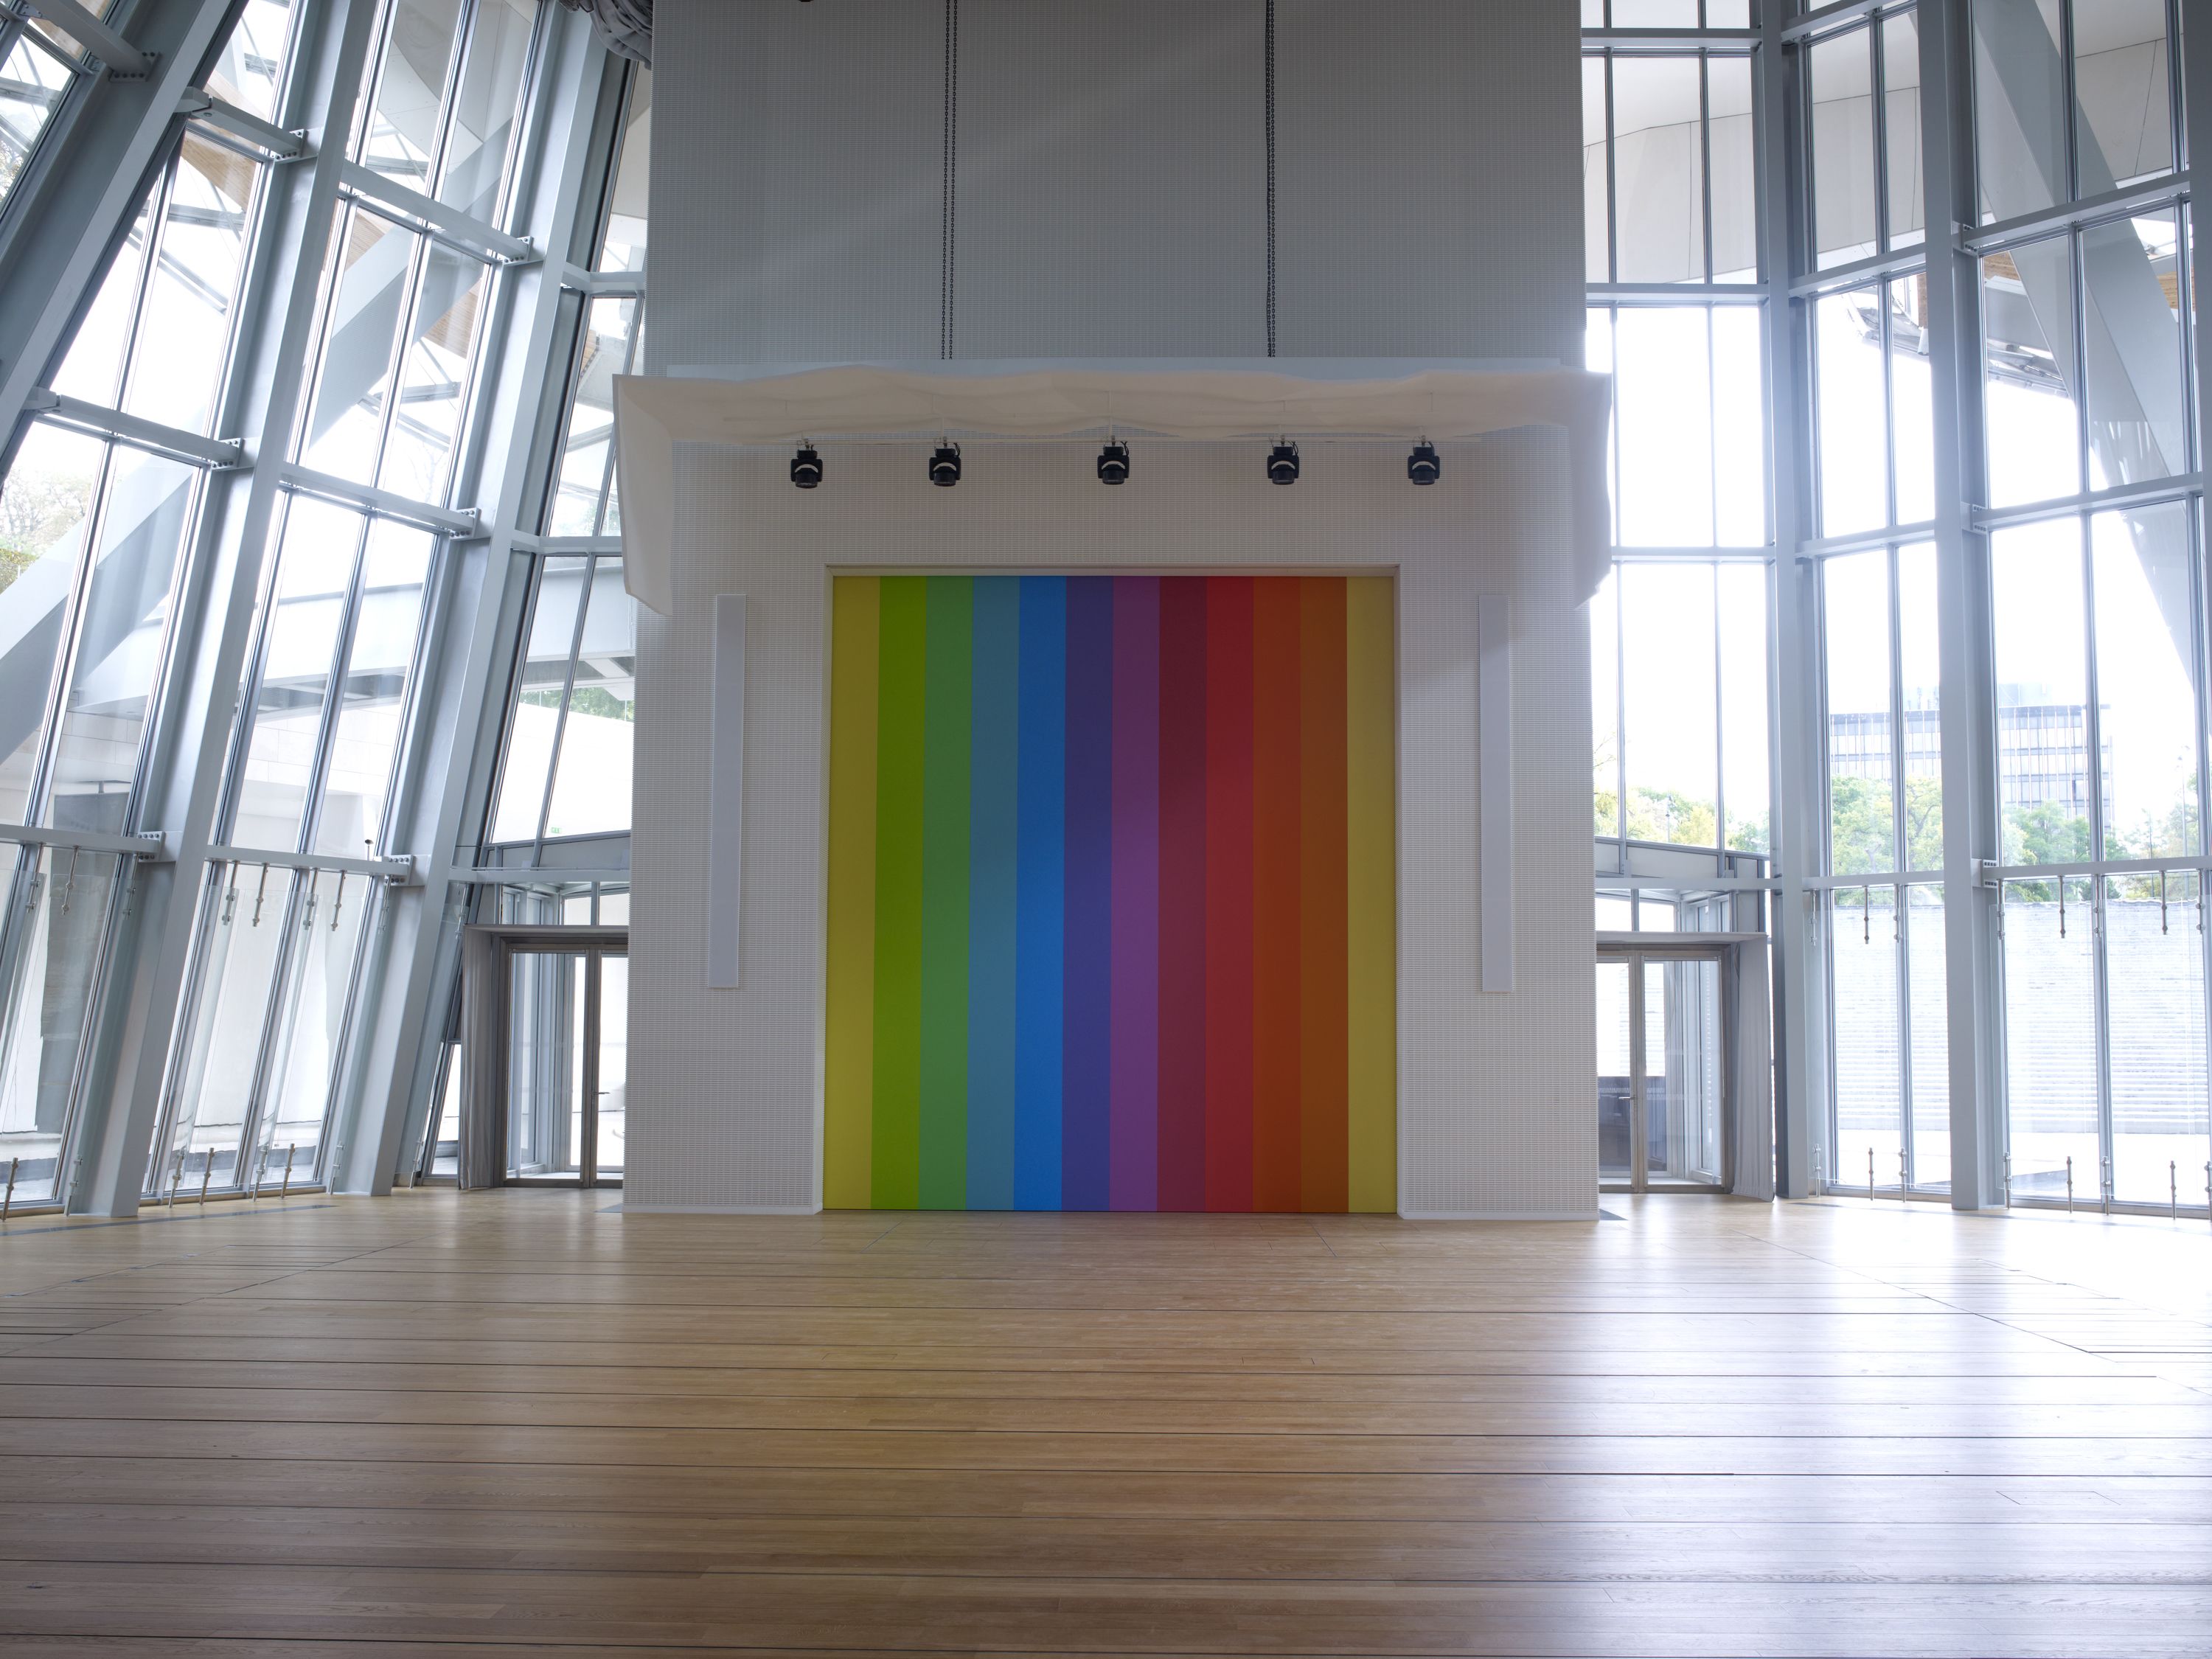 Daniel Buren brings color to the Fondation Louis Vuitton - LVMH